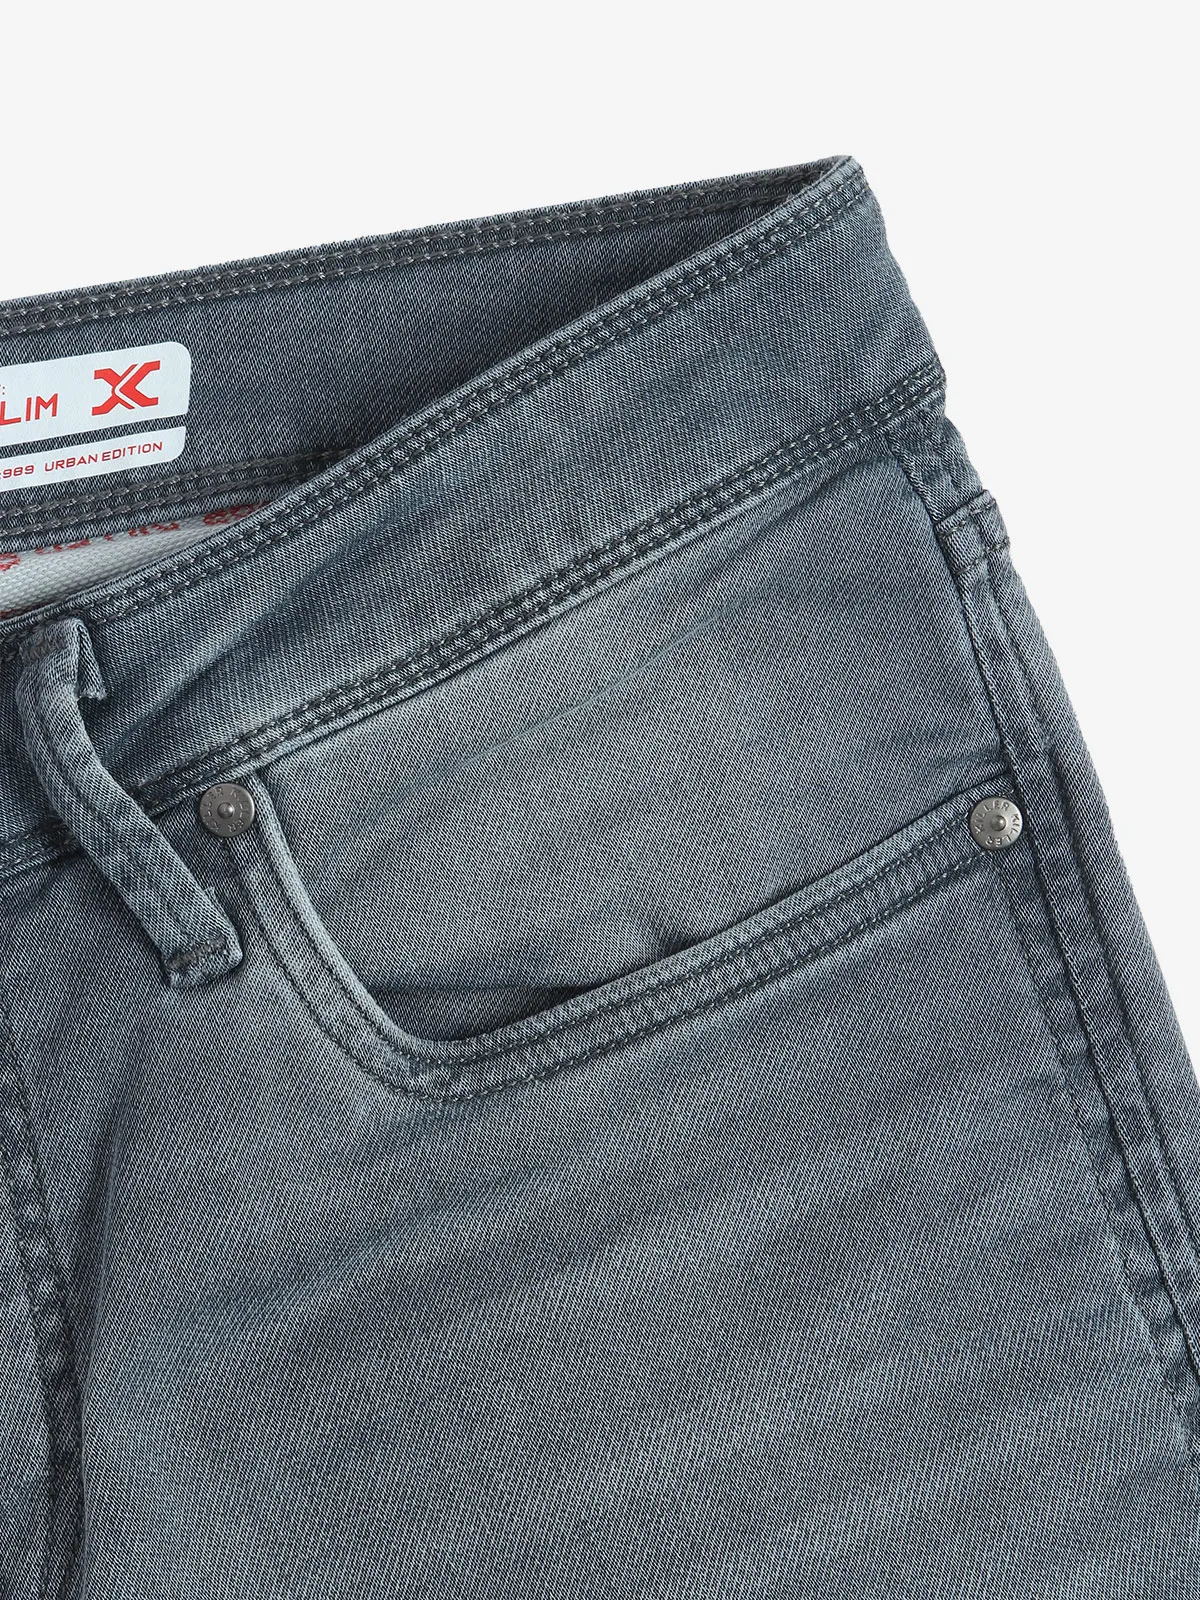 KILLER grey denim washed slim fit jeans